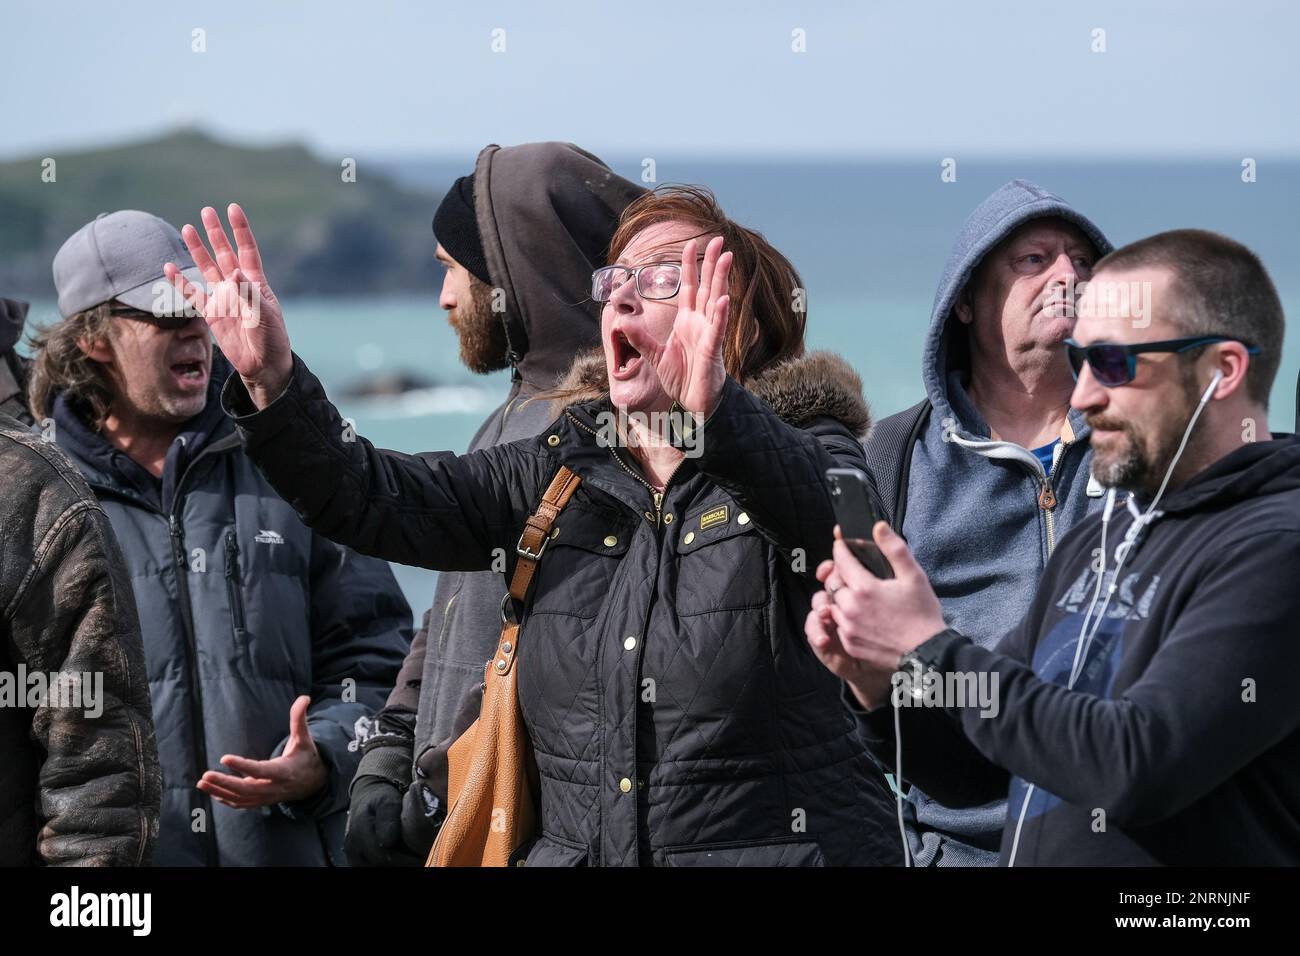 Eine wütende Frau, die während einer Demonstration der rechten Gruppe Reform UK gegen Asylbewerber im Beresford Hotel in Newq schreit Stockfoto